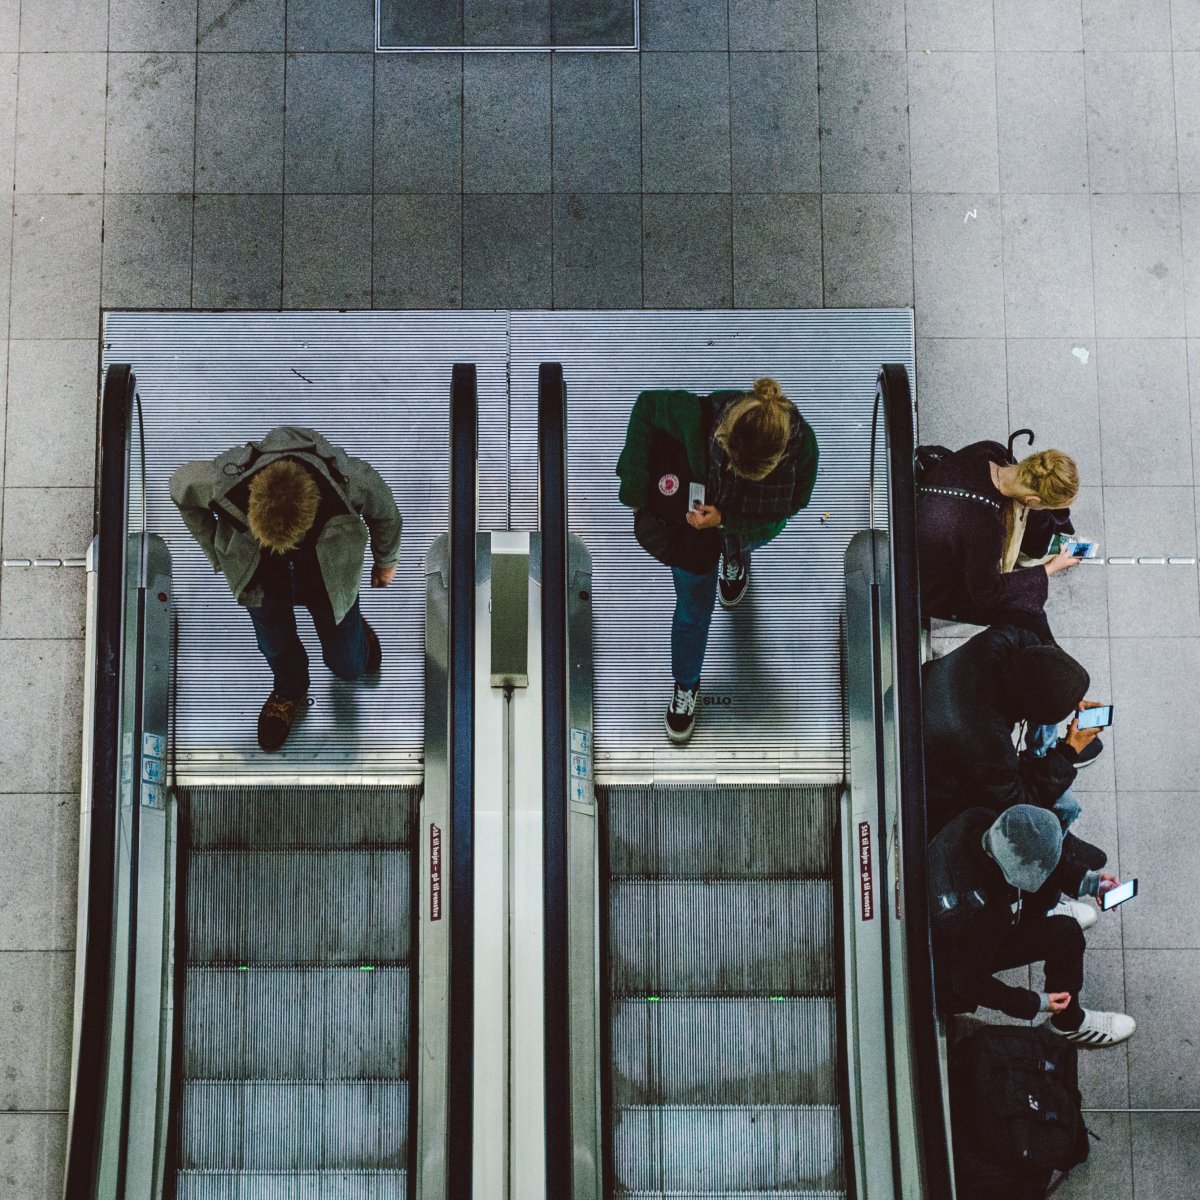 escalators